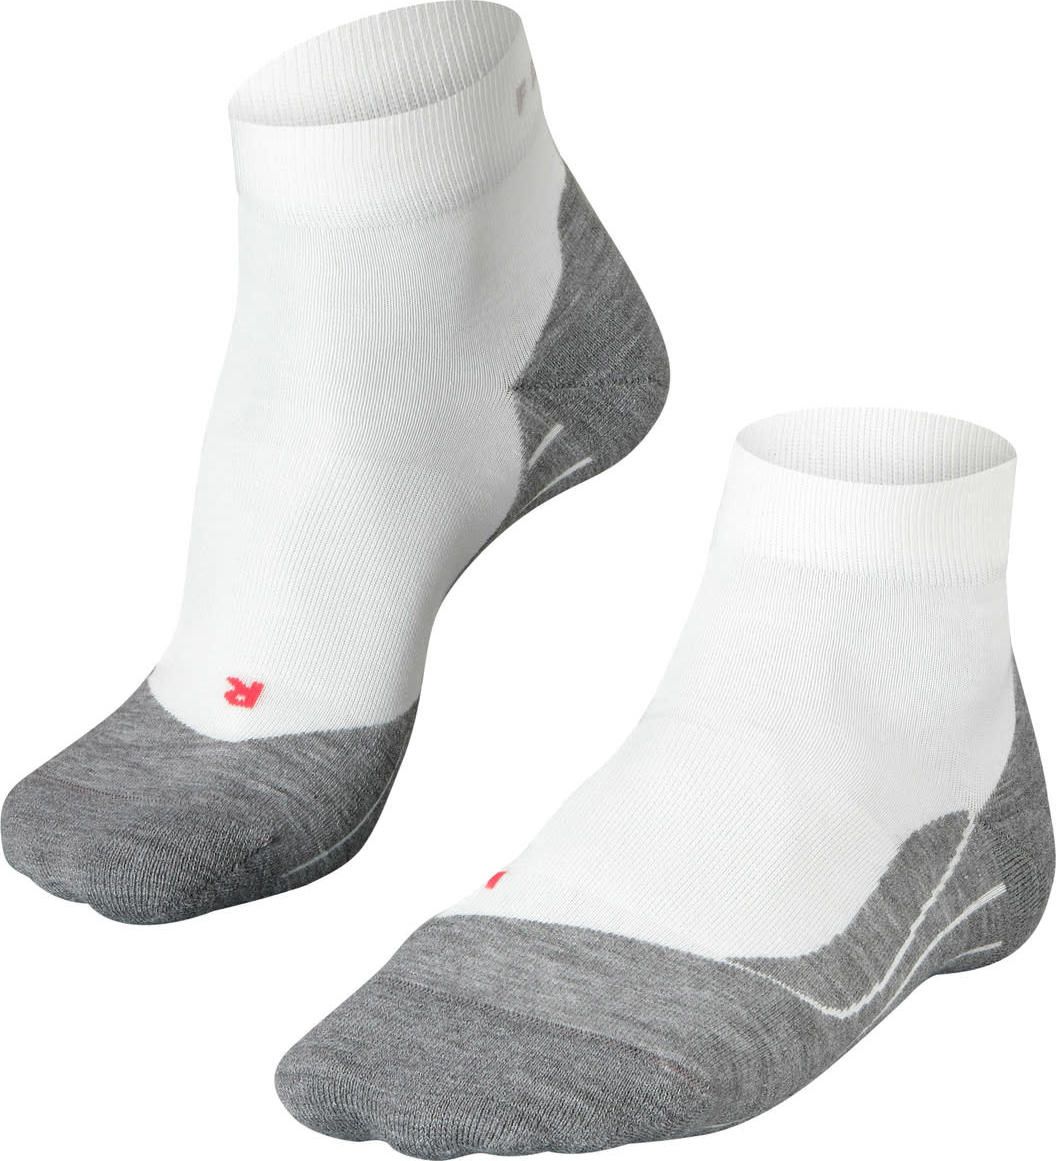 Falke RU4 Short Men's Running Socks white-mix